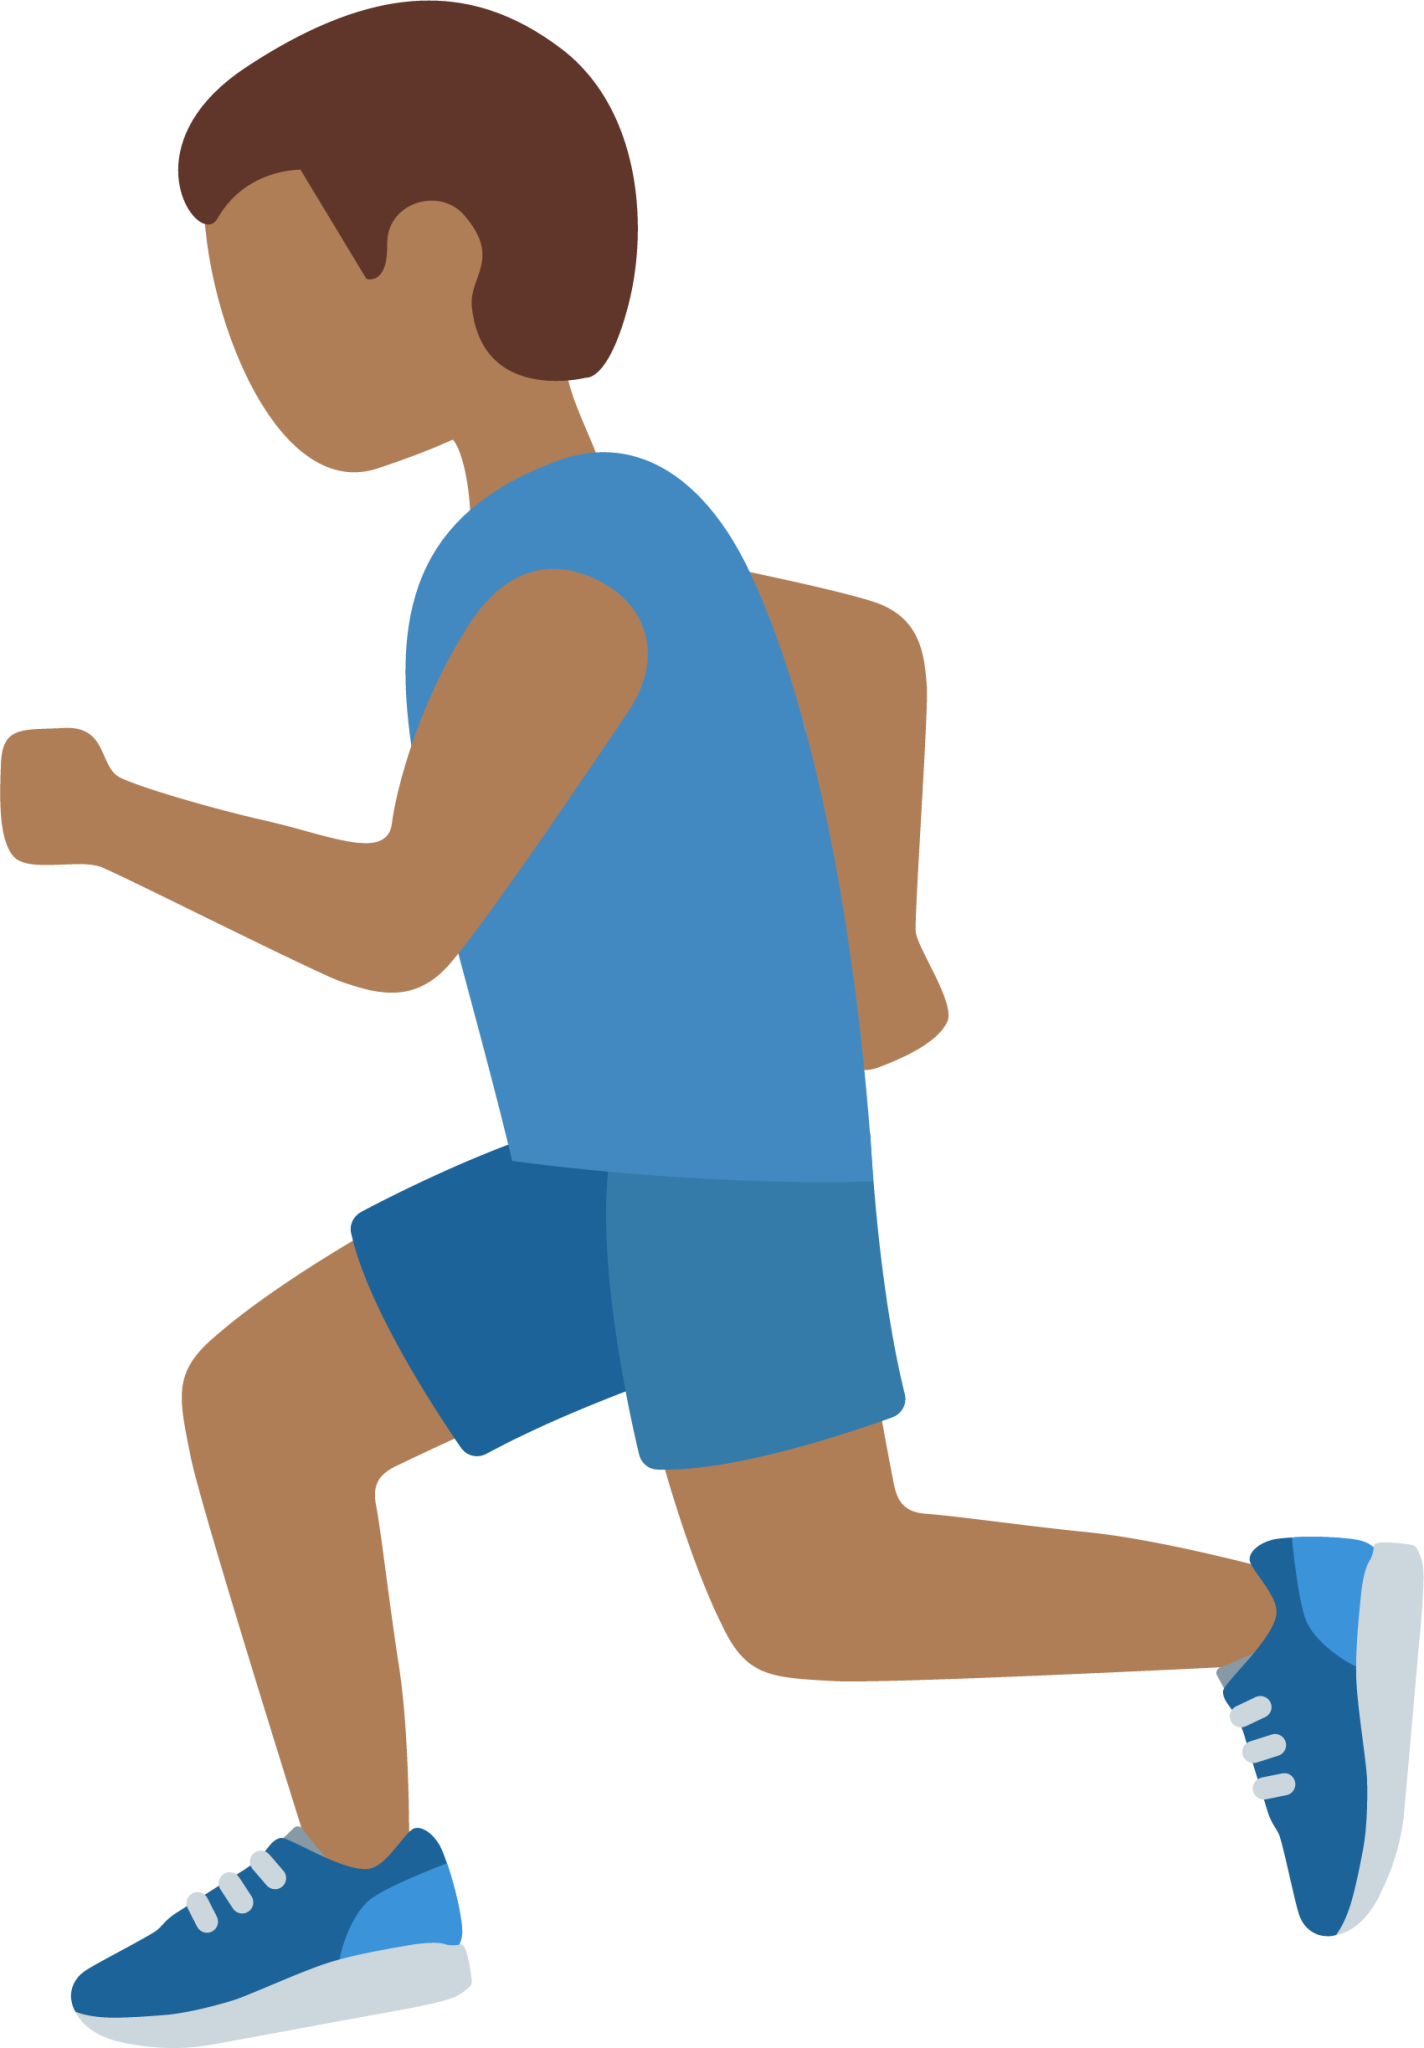 man running: medium-dark skin tone emoji